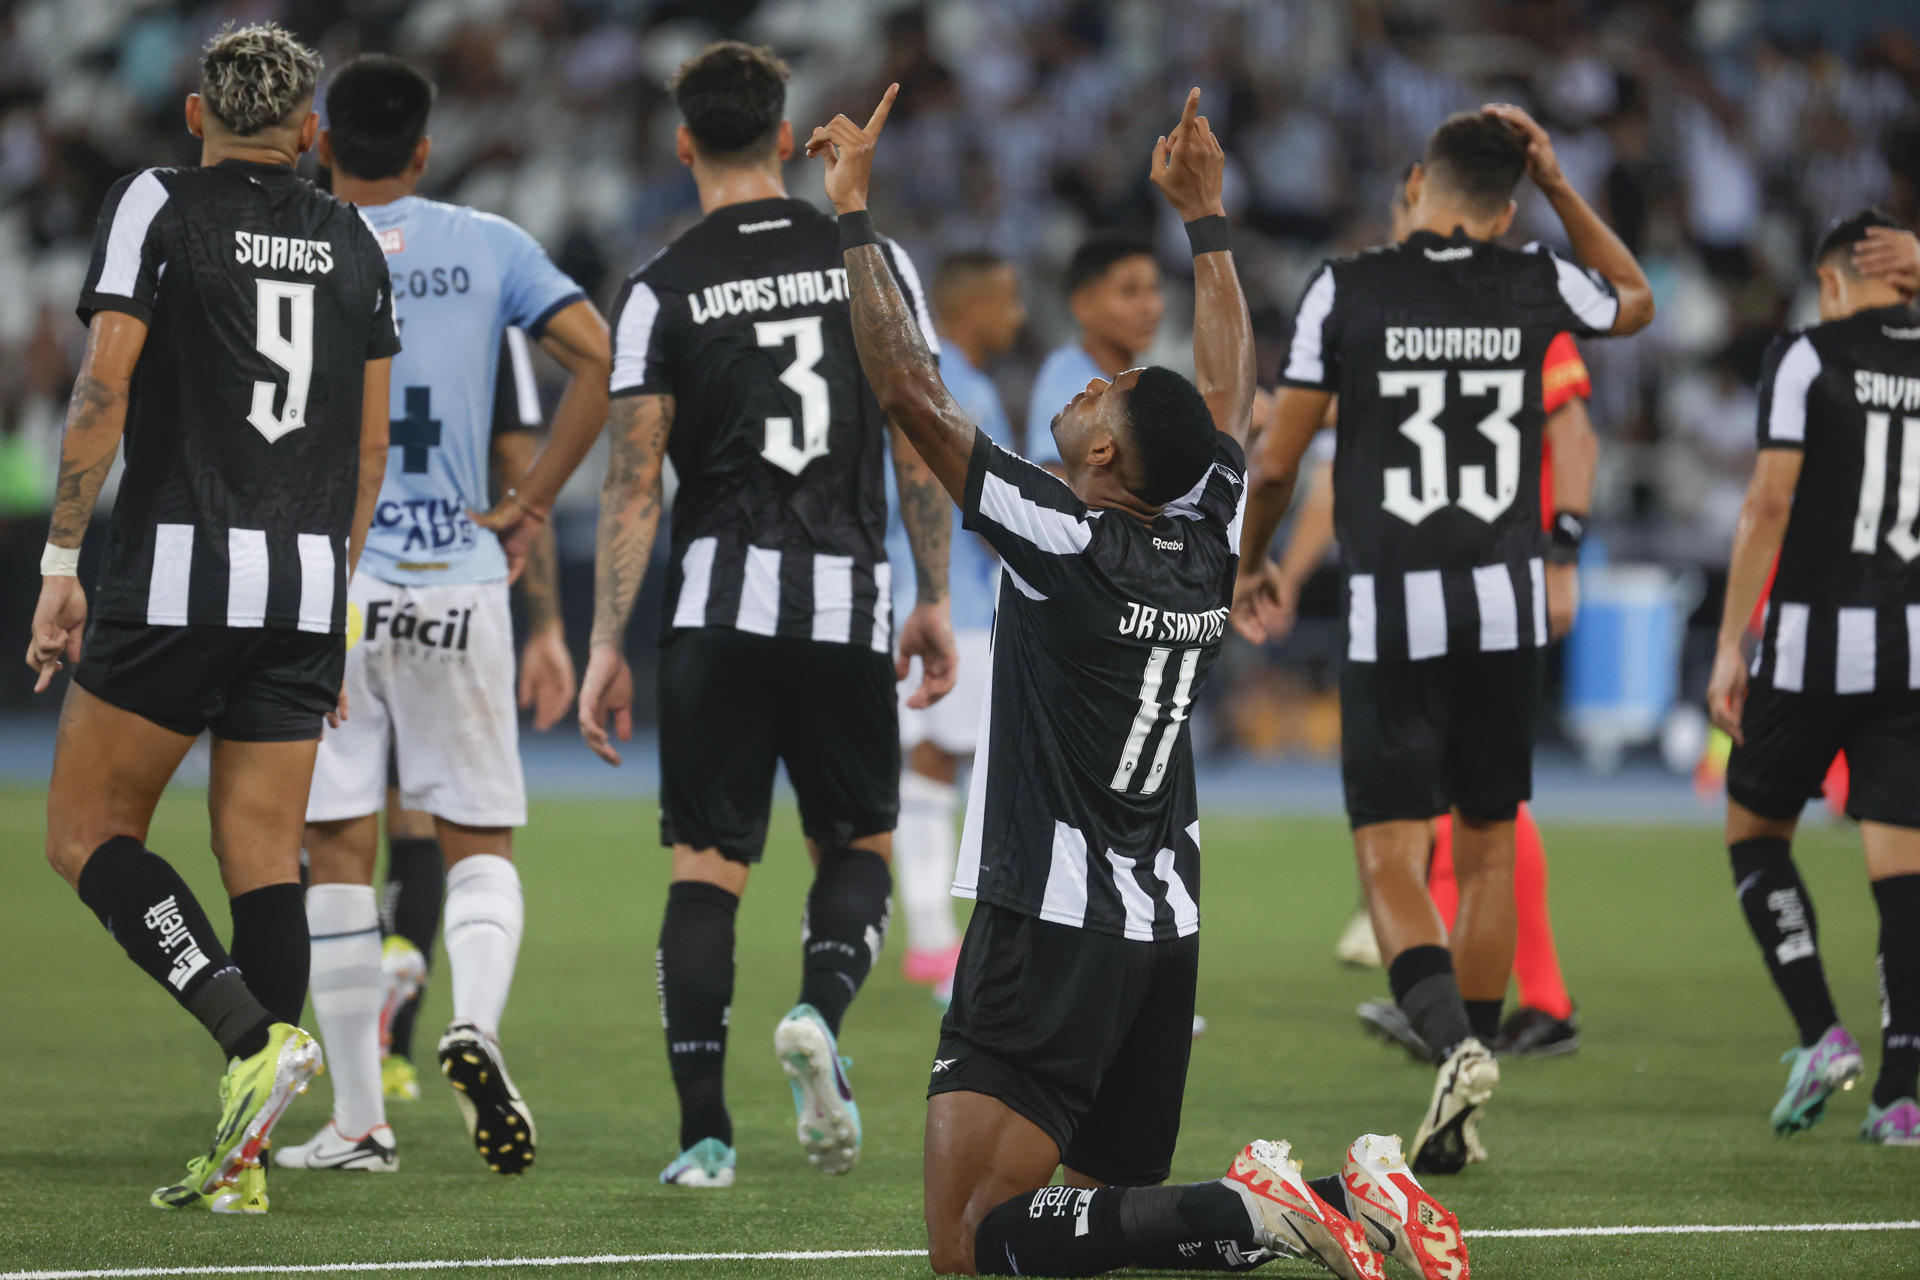 Júnior Santos (c) de Botafogo celebra un gol con Tiquinho Soares este miércoles, en un partido de la segunda fase de la Copa Libertadores. EFE/ Antonio Lacerda